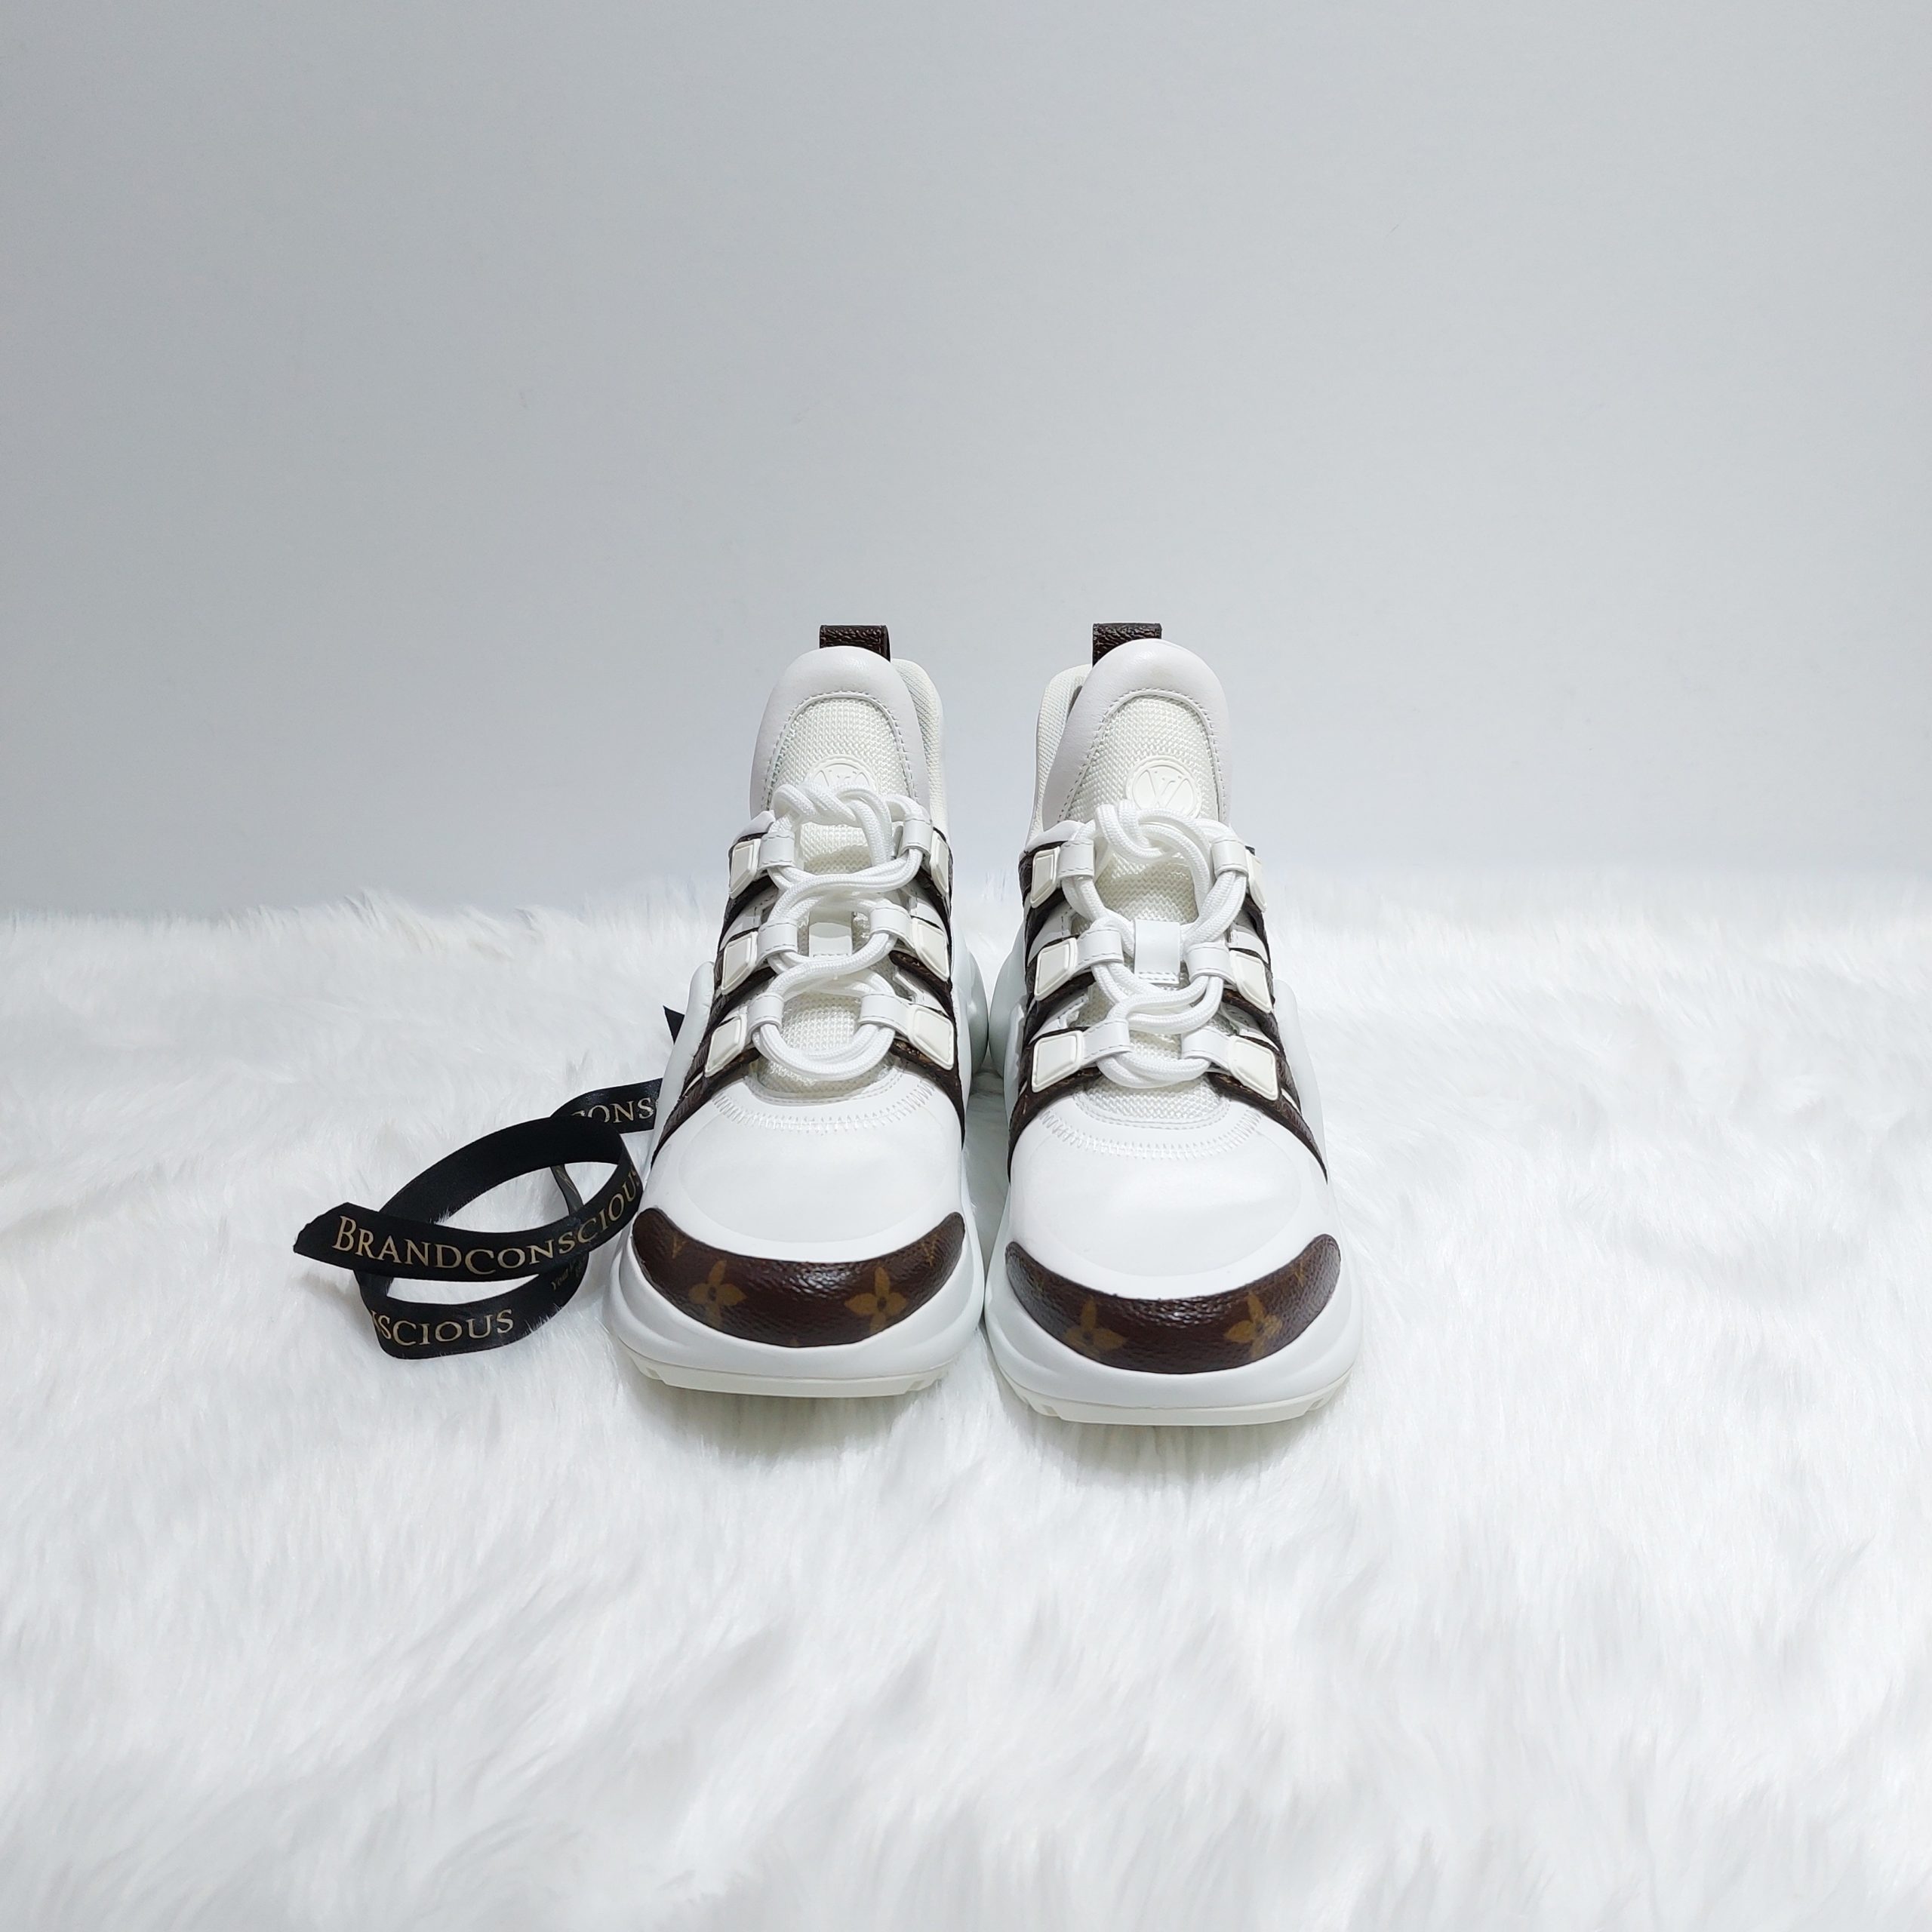 LOUIS VUITTON Monogram LV Archlight Sneakers 35.5 Grey White 1272913